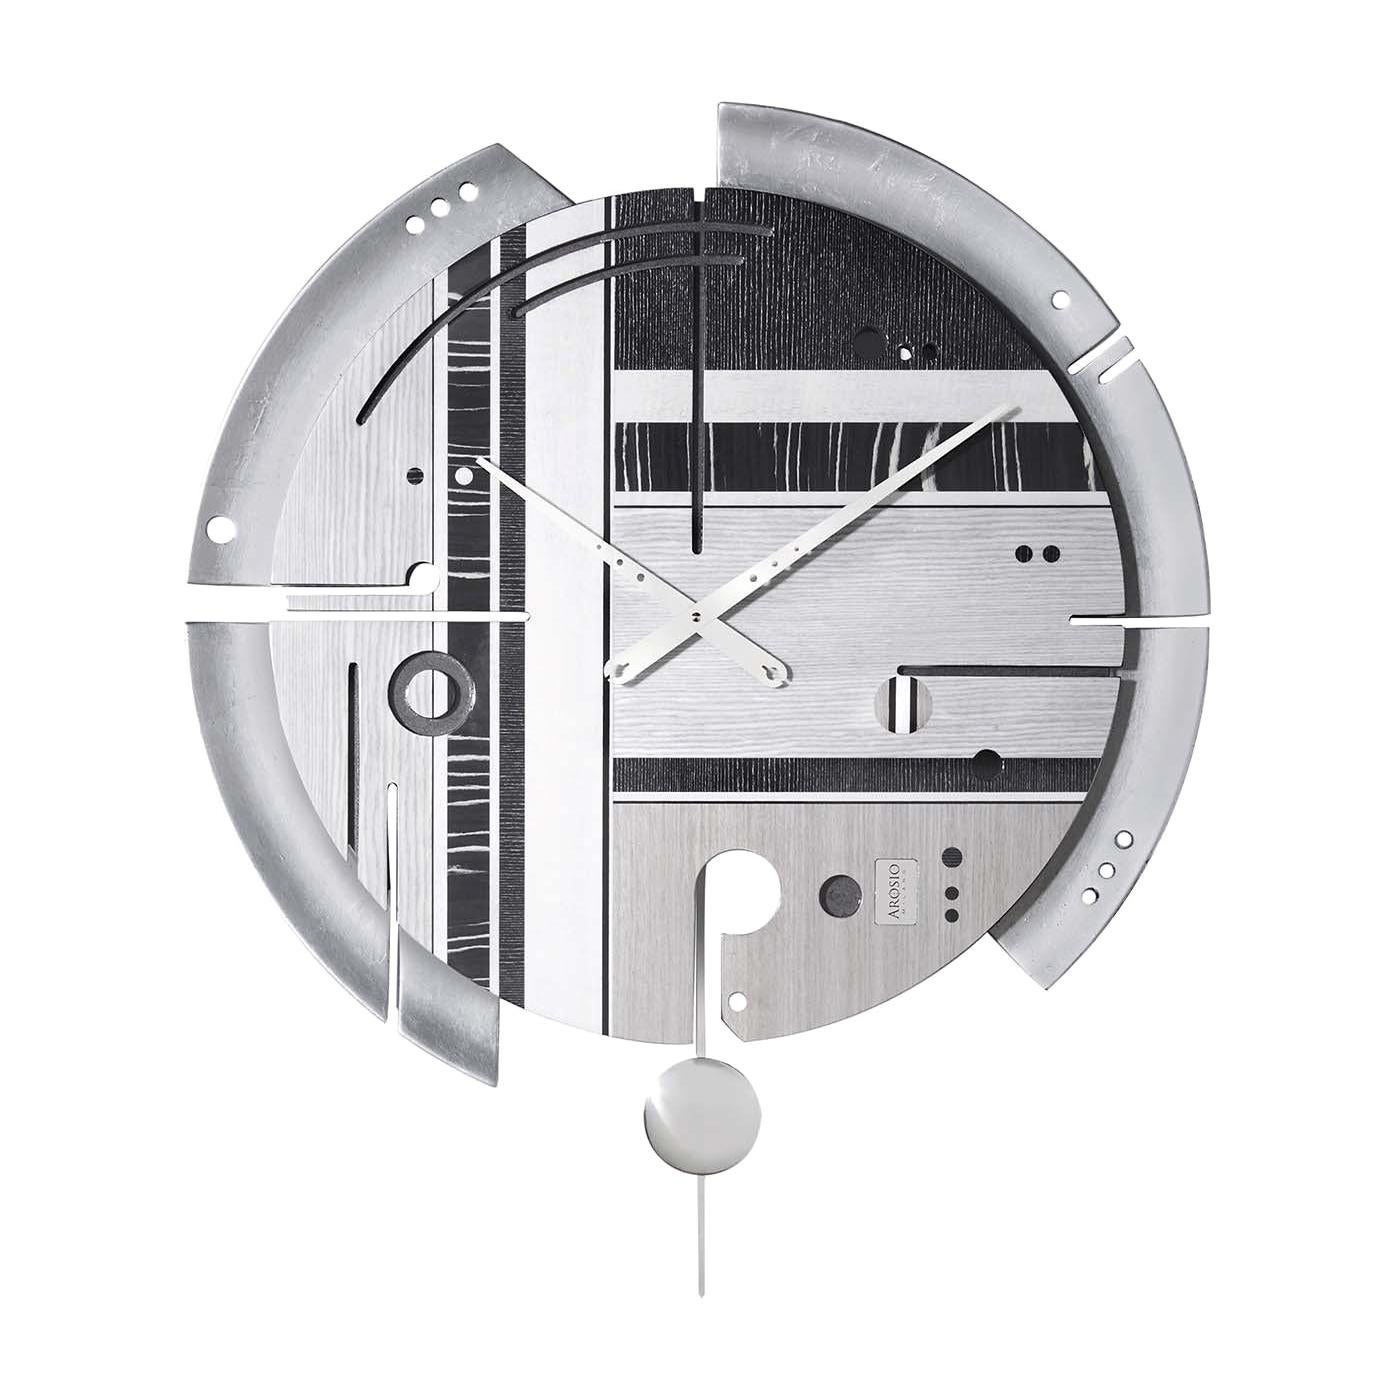 Samada Silver Special Edition Clock by Arosio Milano